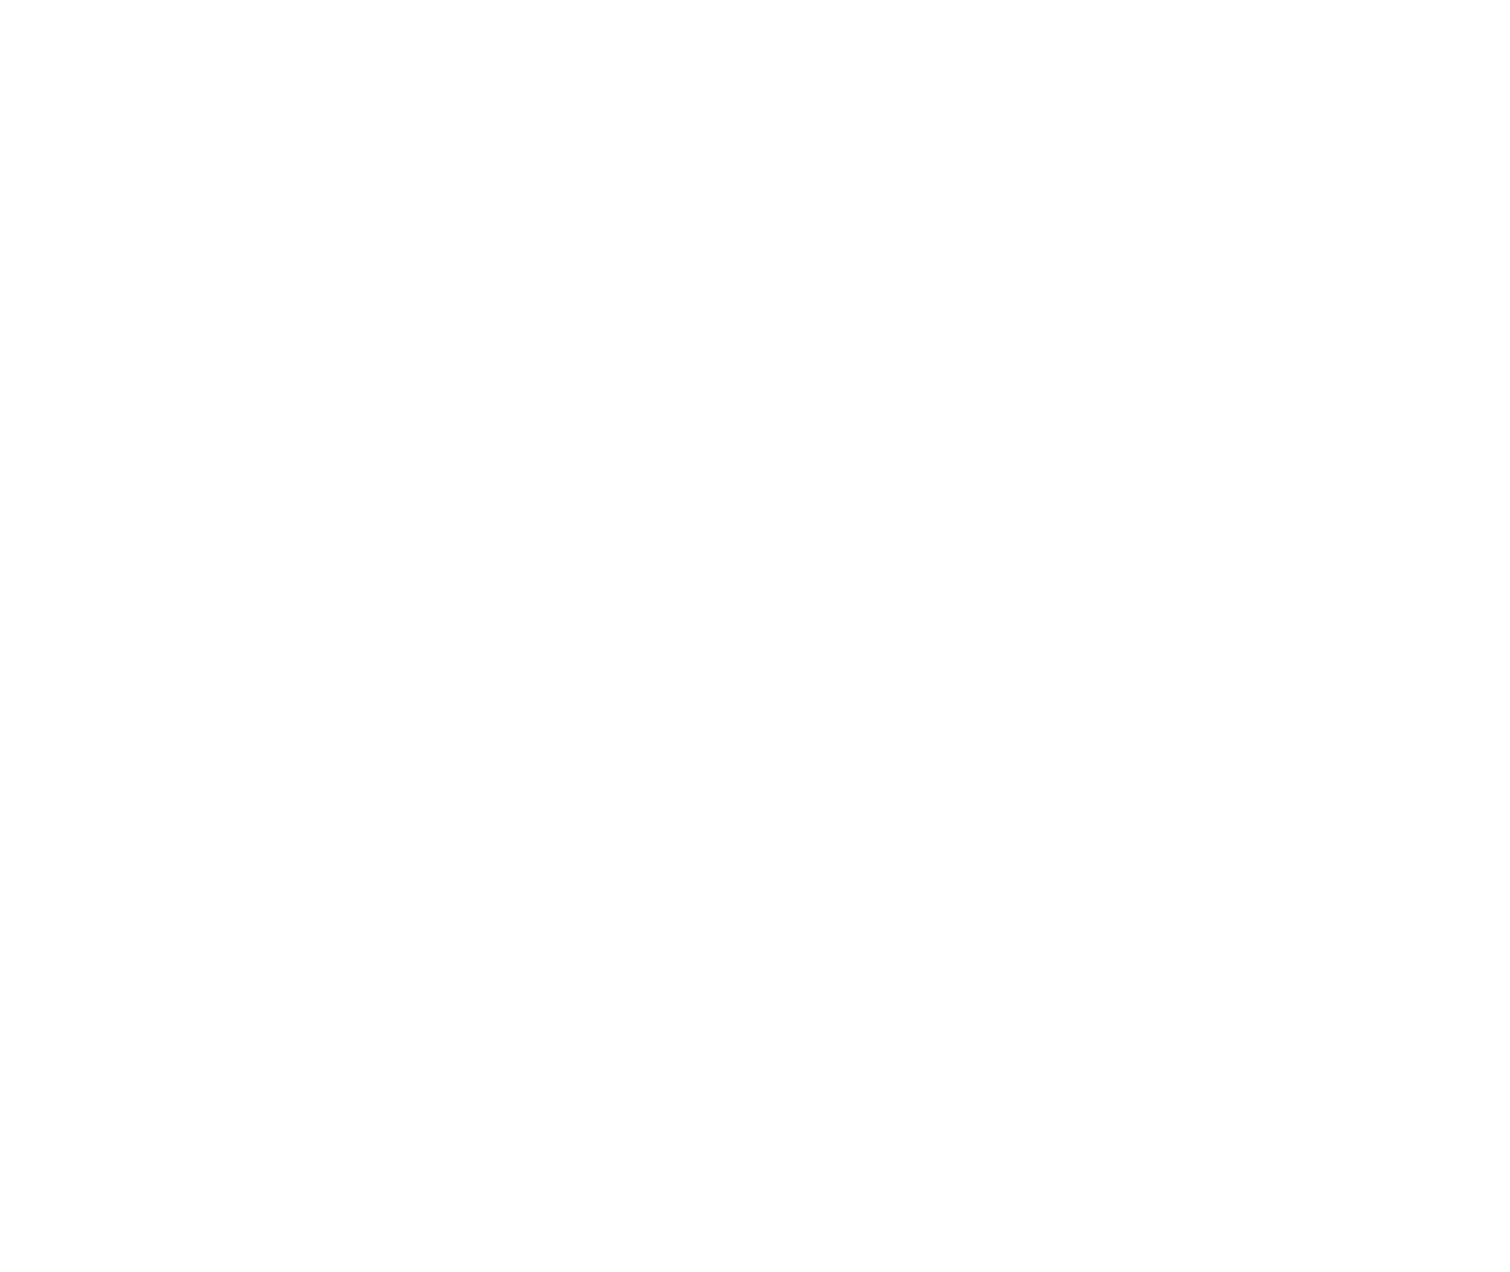 Afristrat Investment logo large for dark backgrounds (transparent PNG)